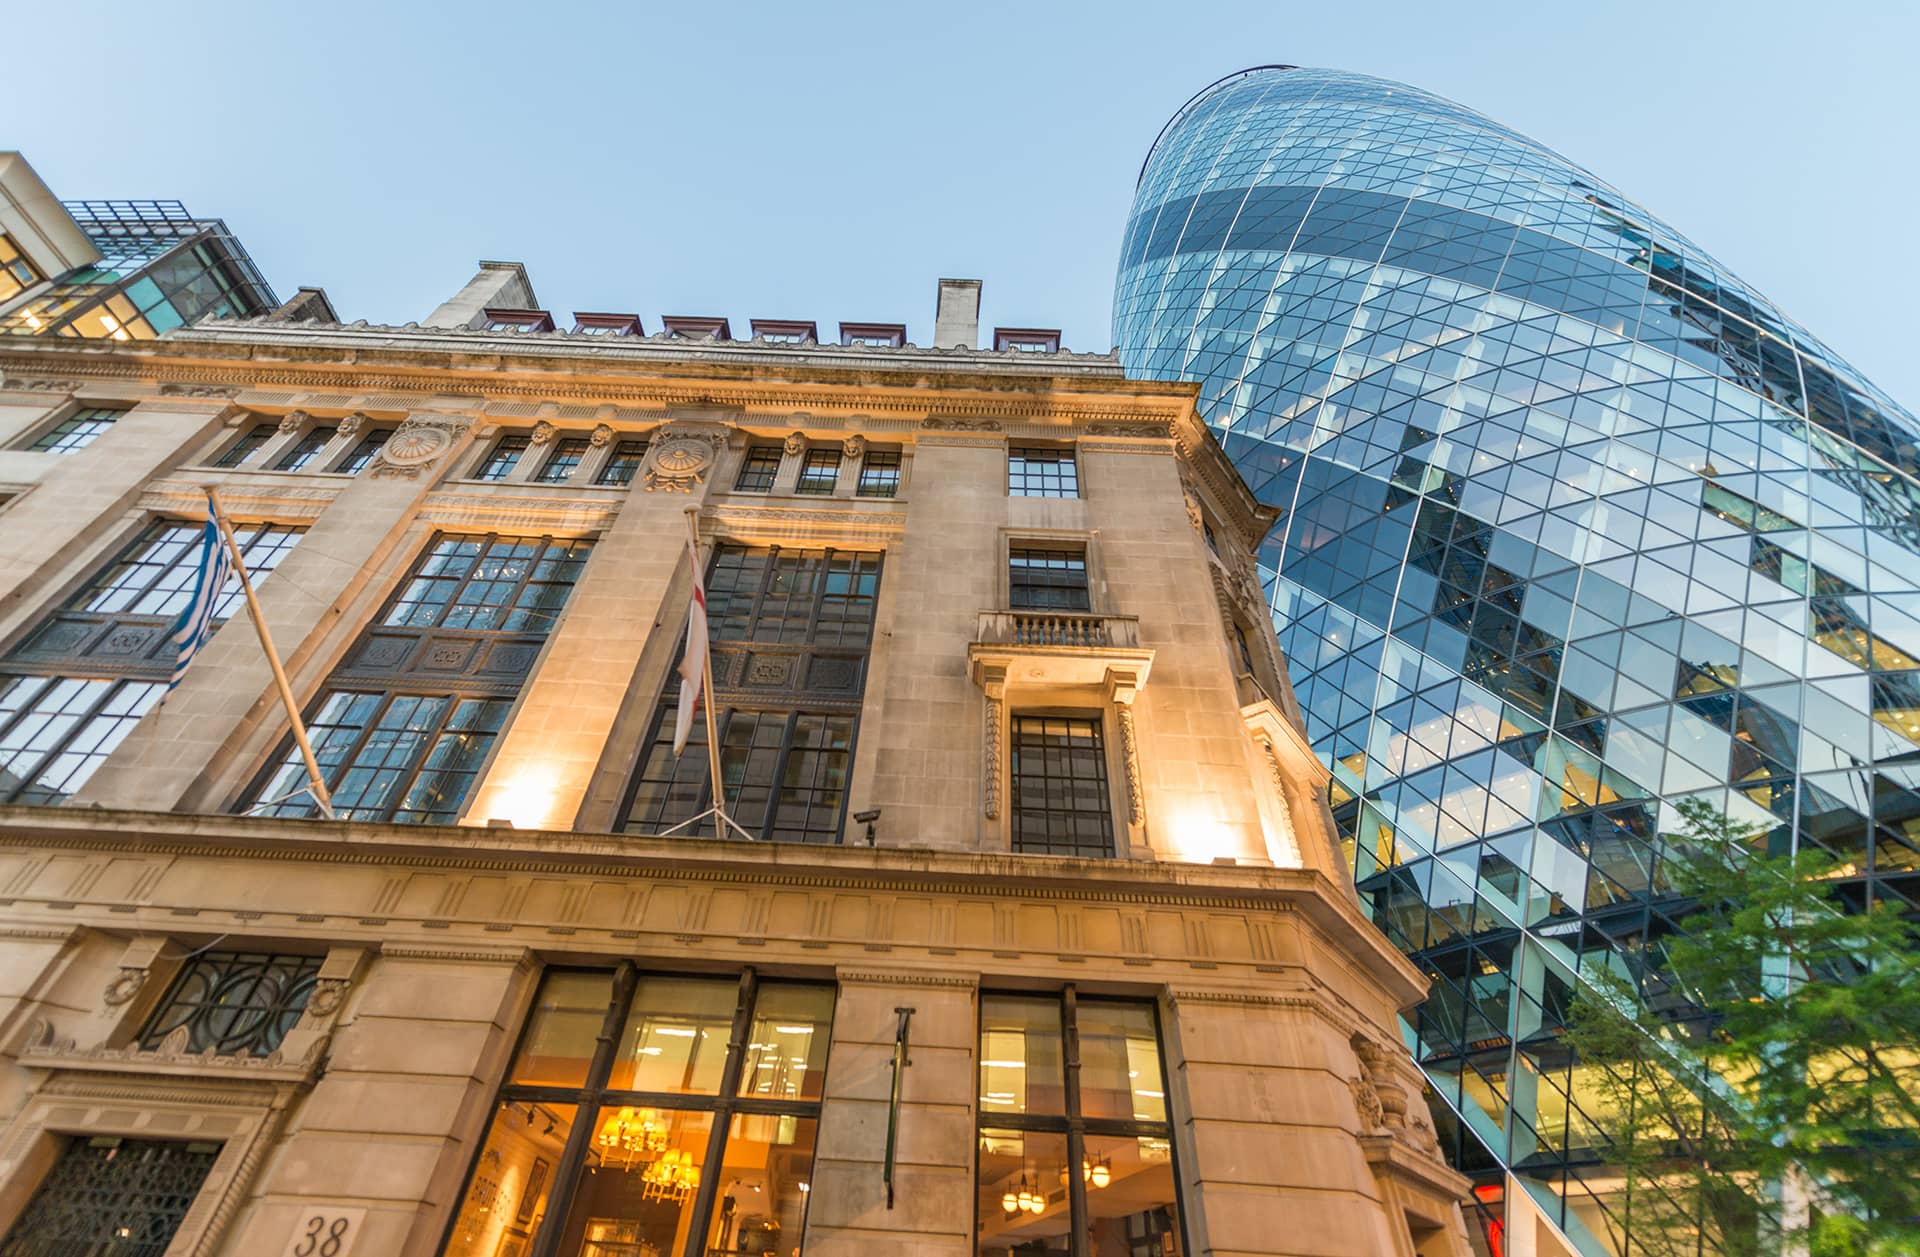 Londoner Architektur – Welcher Stil stammt von welchem Monarchen?